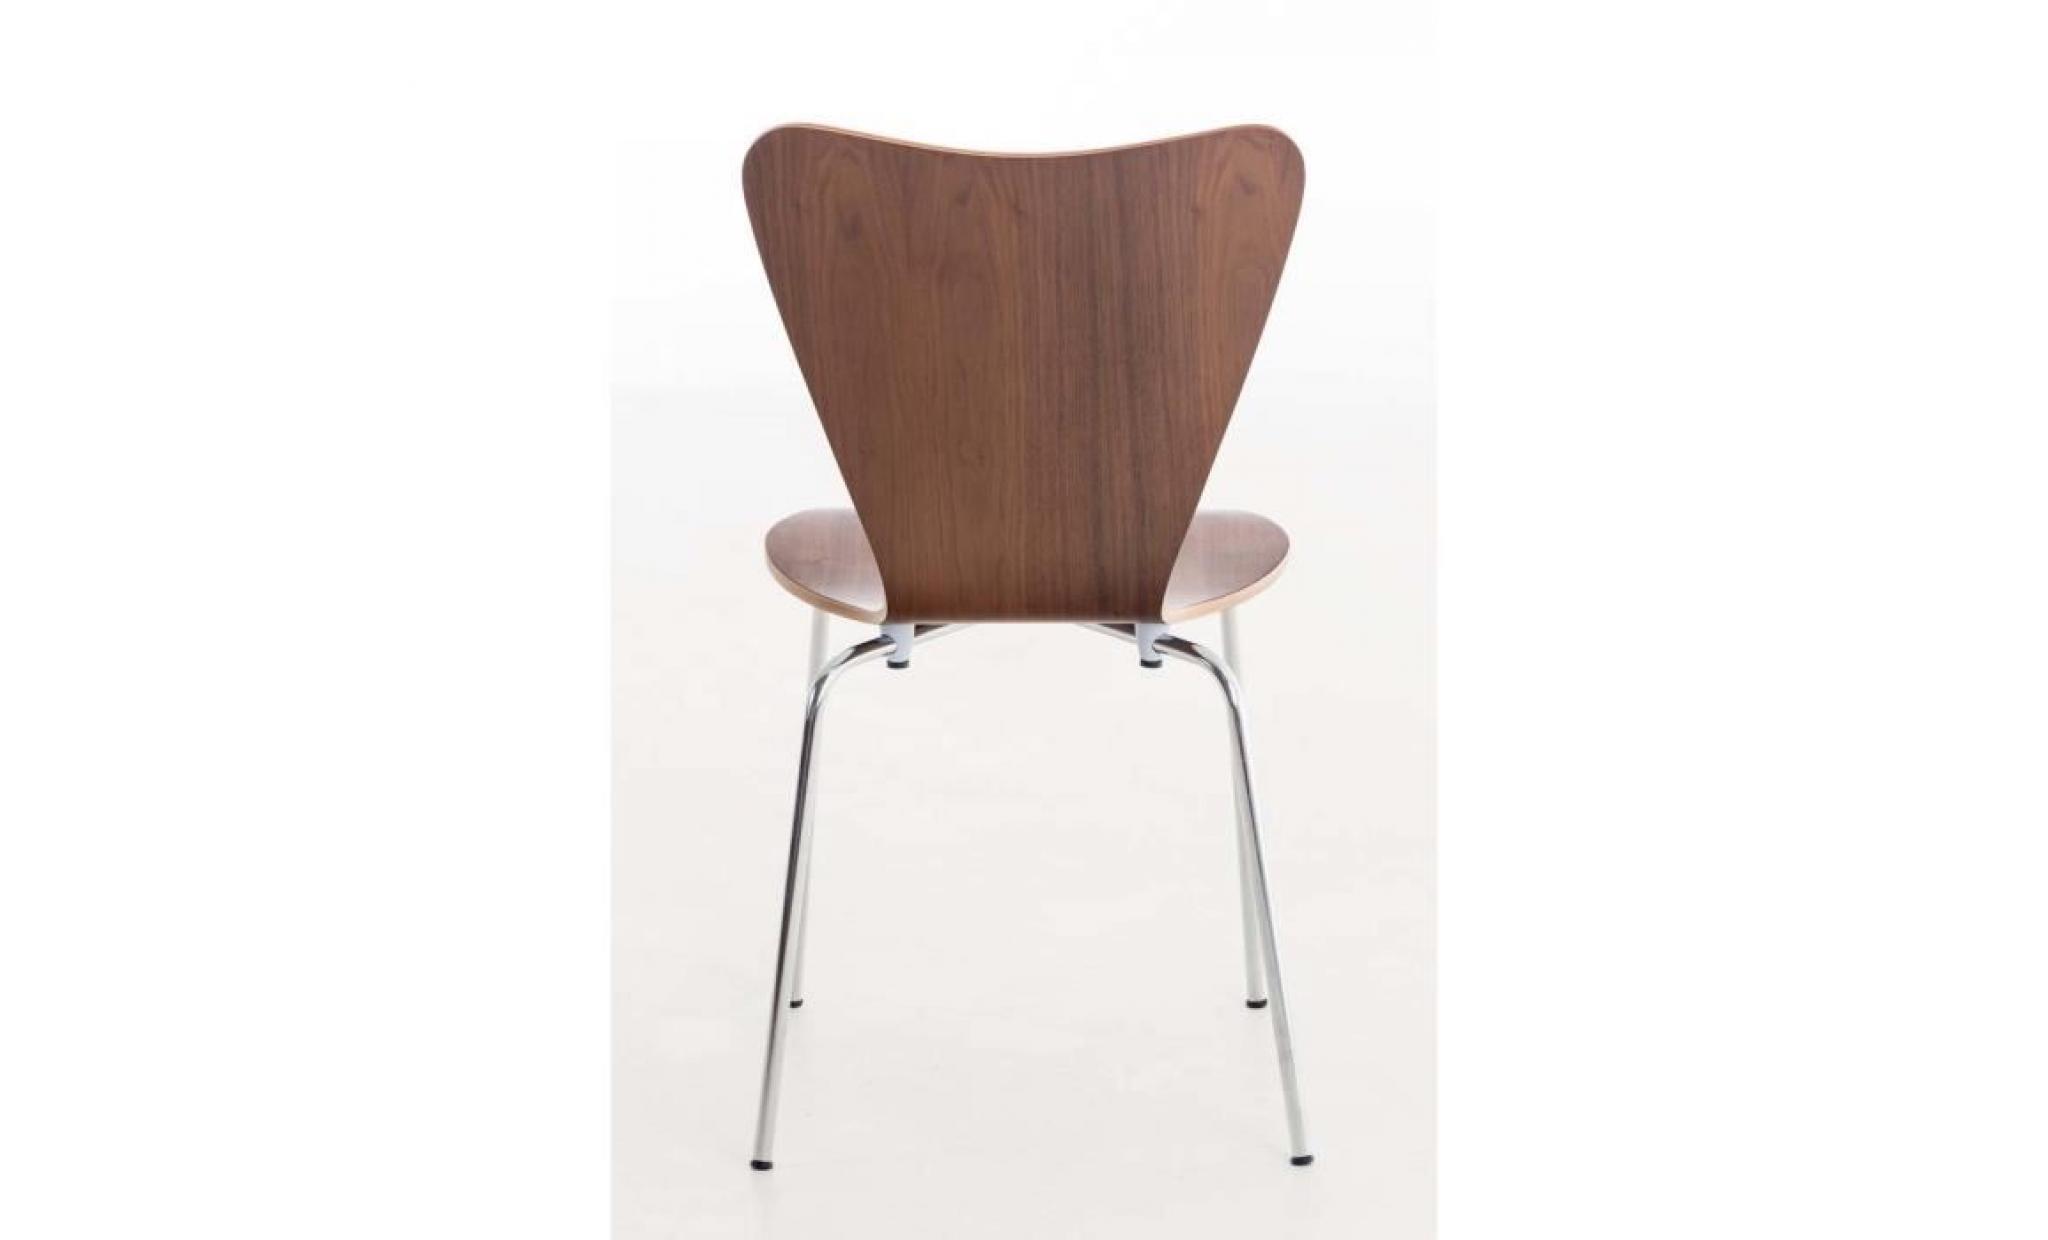 clp chaise empilable moderne calisto de visiteur, ergonomique et solide au pietement stable chromé concu pour vos zone d'attente ou pas cher